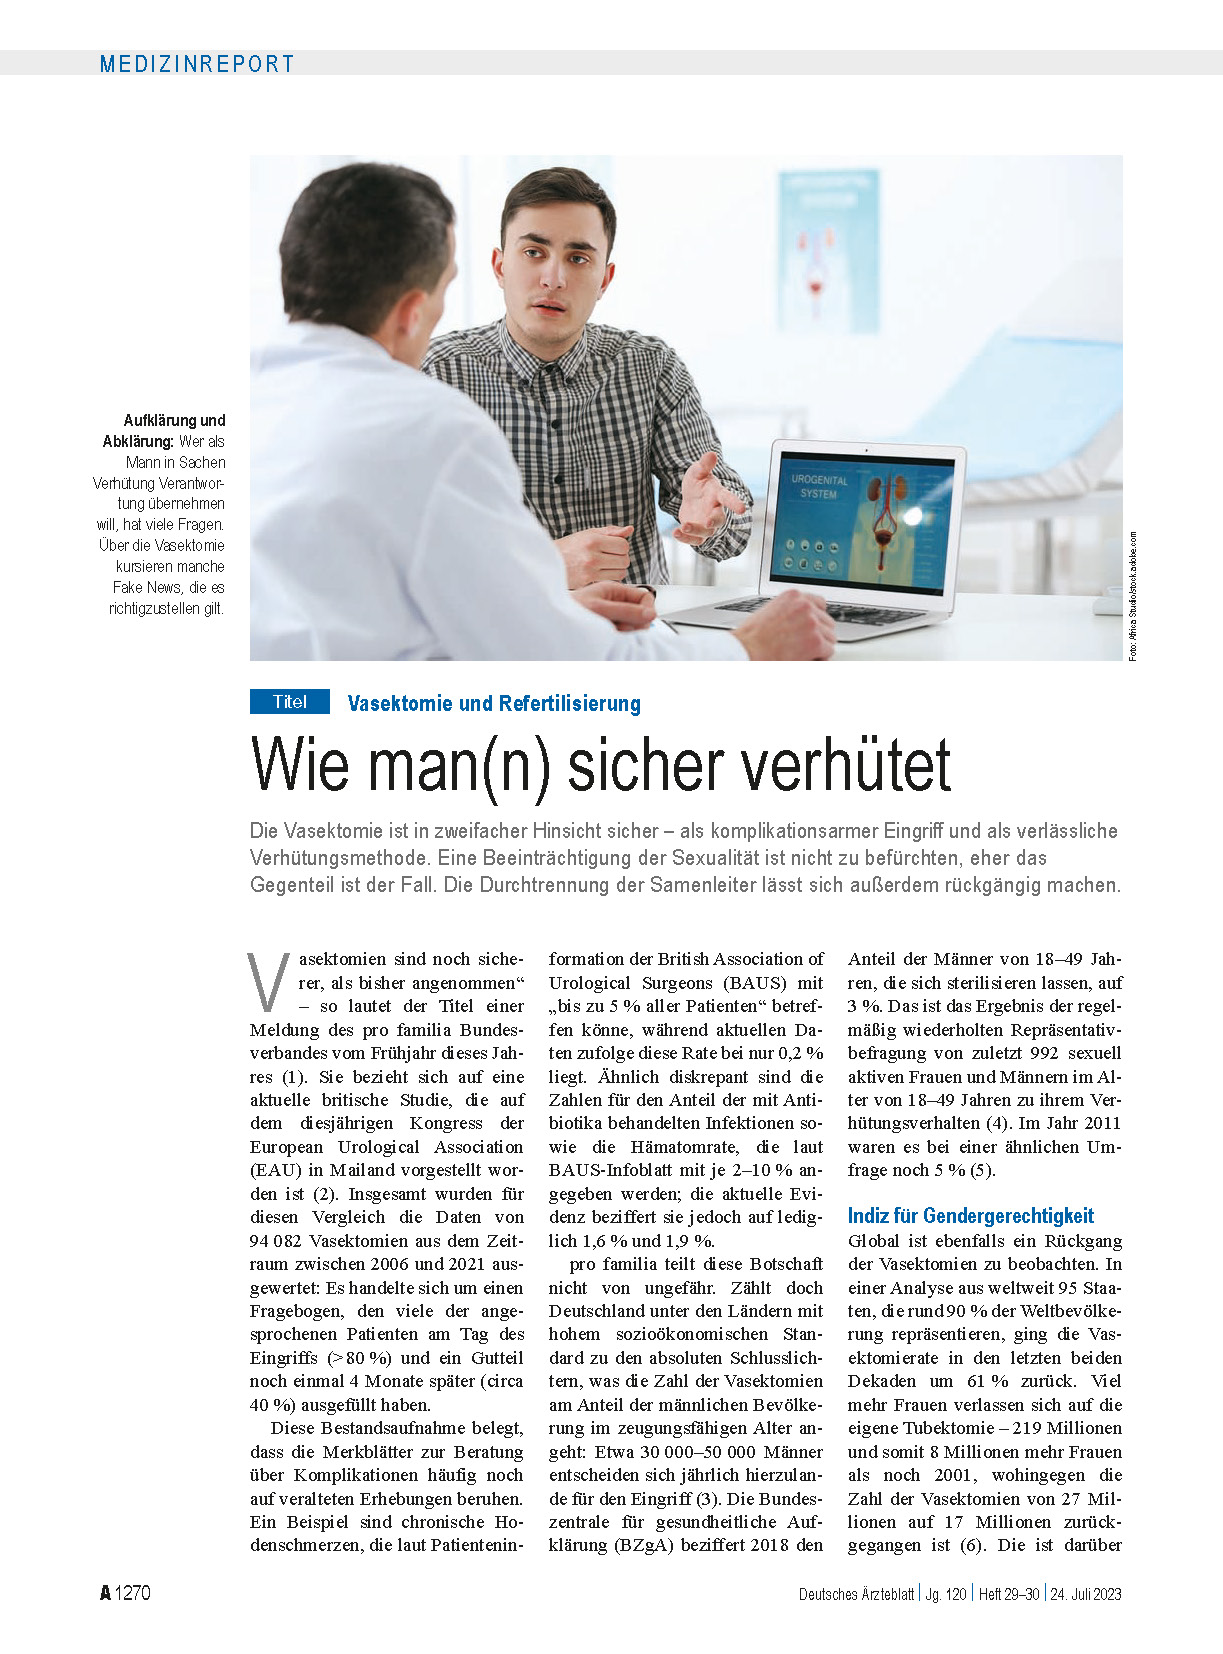 Vasektomie - Aktueller Beitrag - Deutsches Ärzteblatt | Urologische Facharztpraxis Köln-Kalk